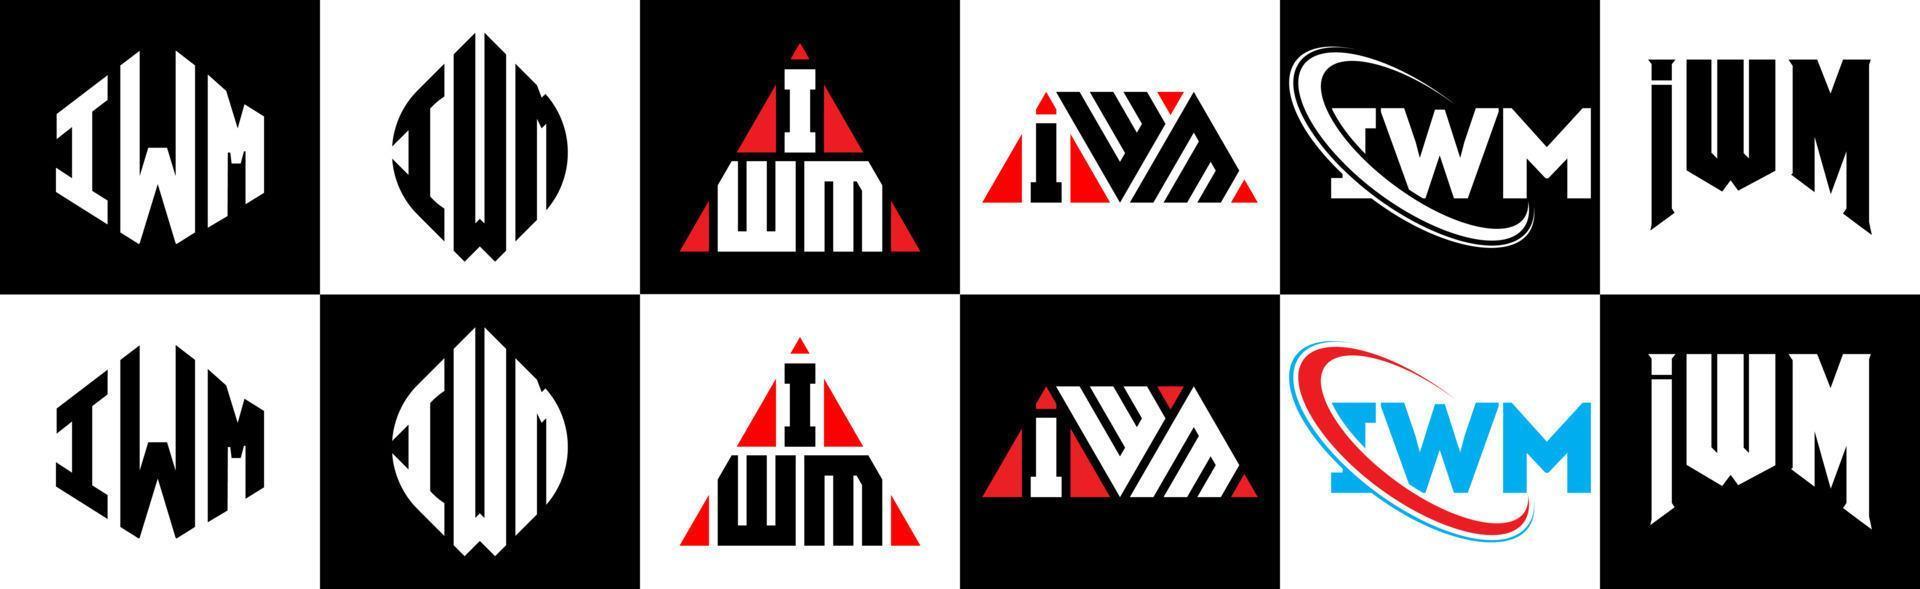 création de logo de lettre iwm en six styles. iwm polygone, cercle, triangle, hexagone, style plat et simple avec logo de lettre de variation de couleur noir et blanc dans un plan de travail. iwm logo minimaliste et classique vecteur